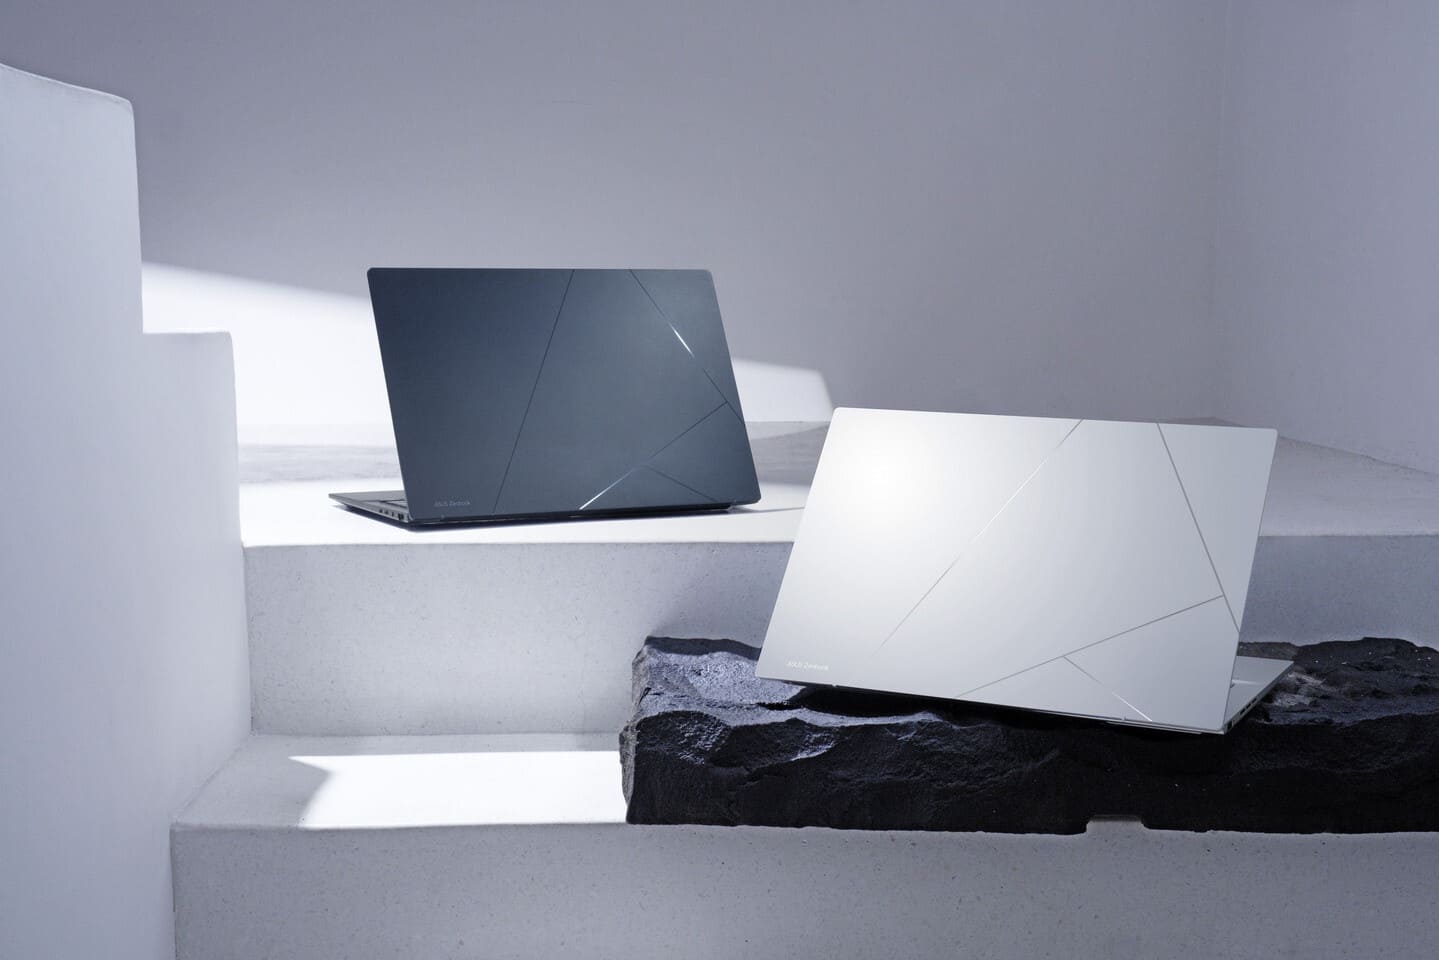 ASUS công bố Zenbook 14 OLED hoàn toàn mới